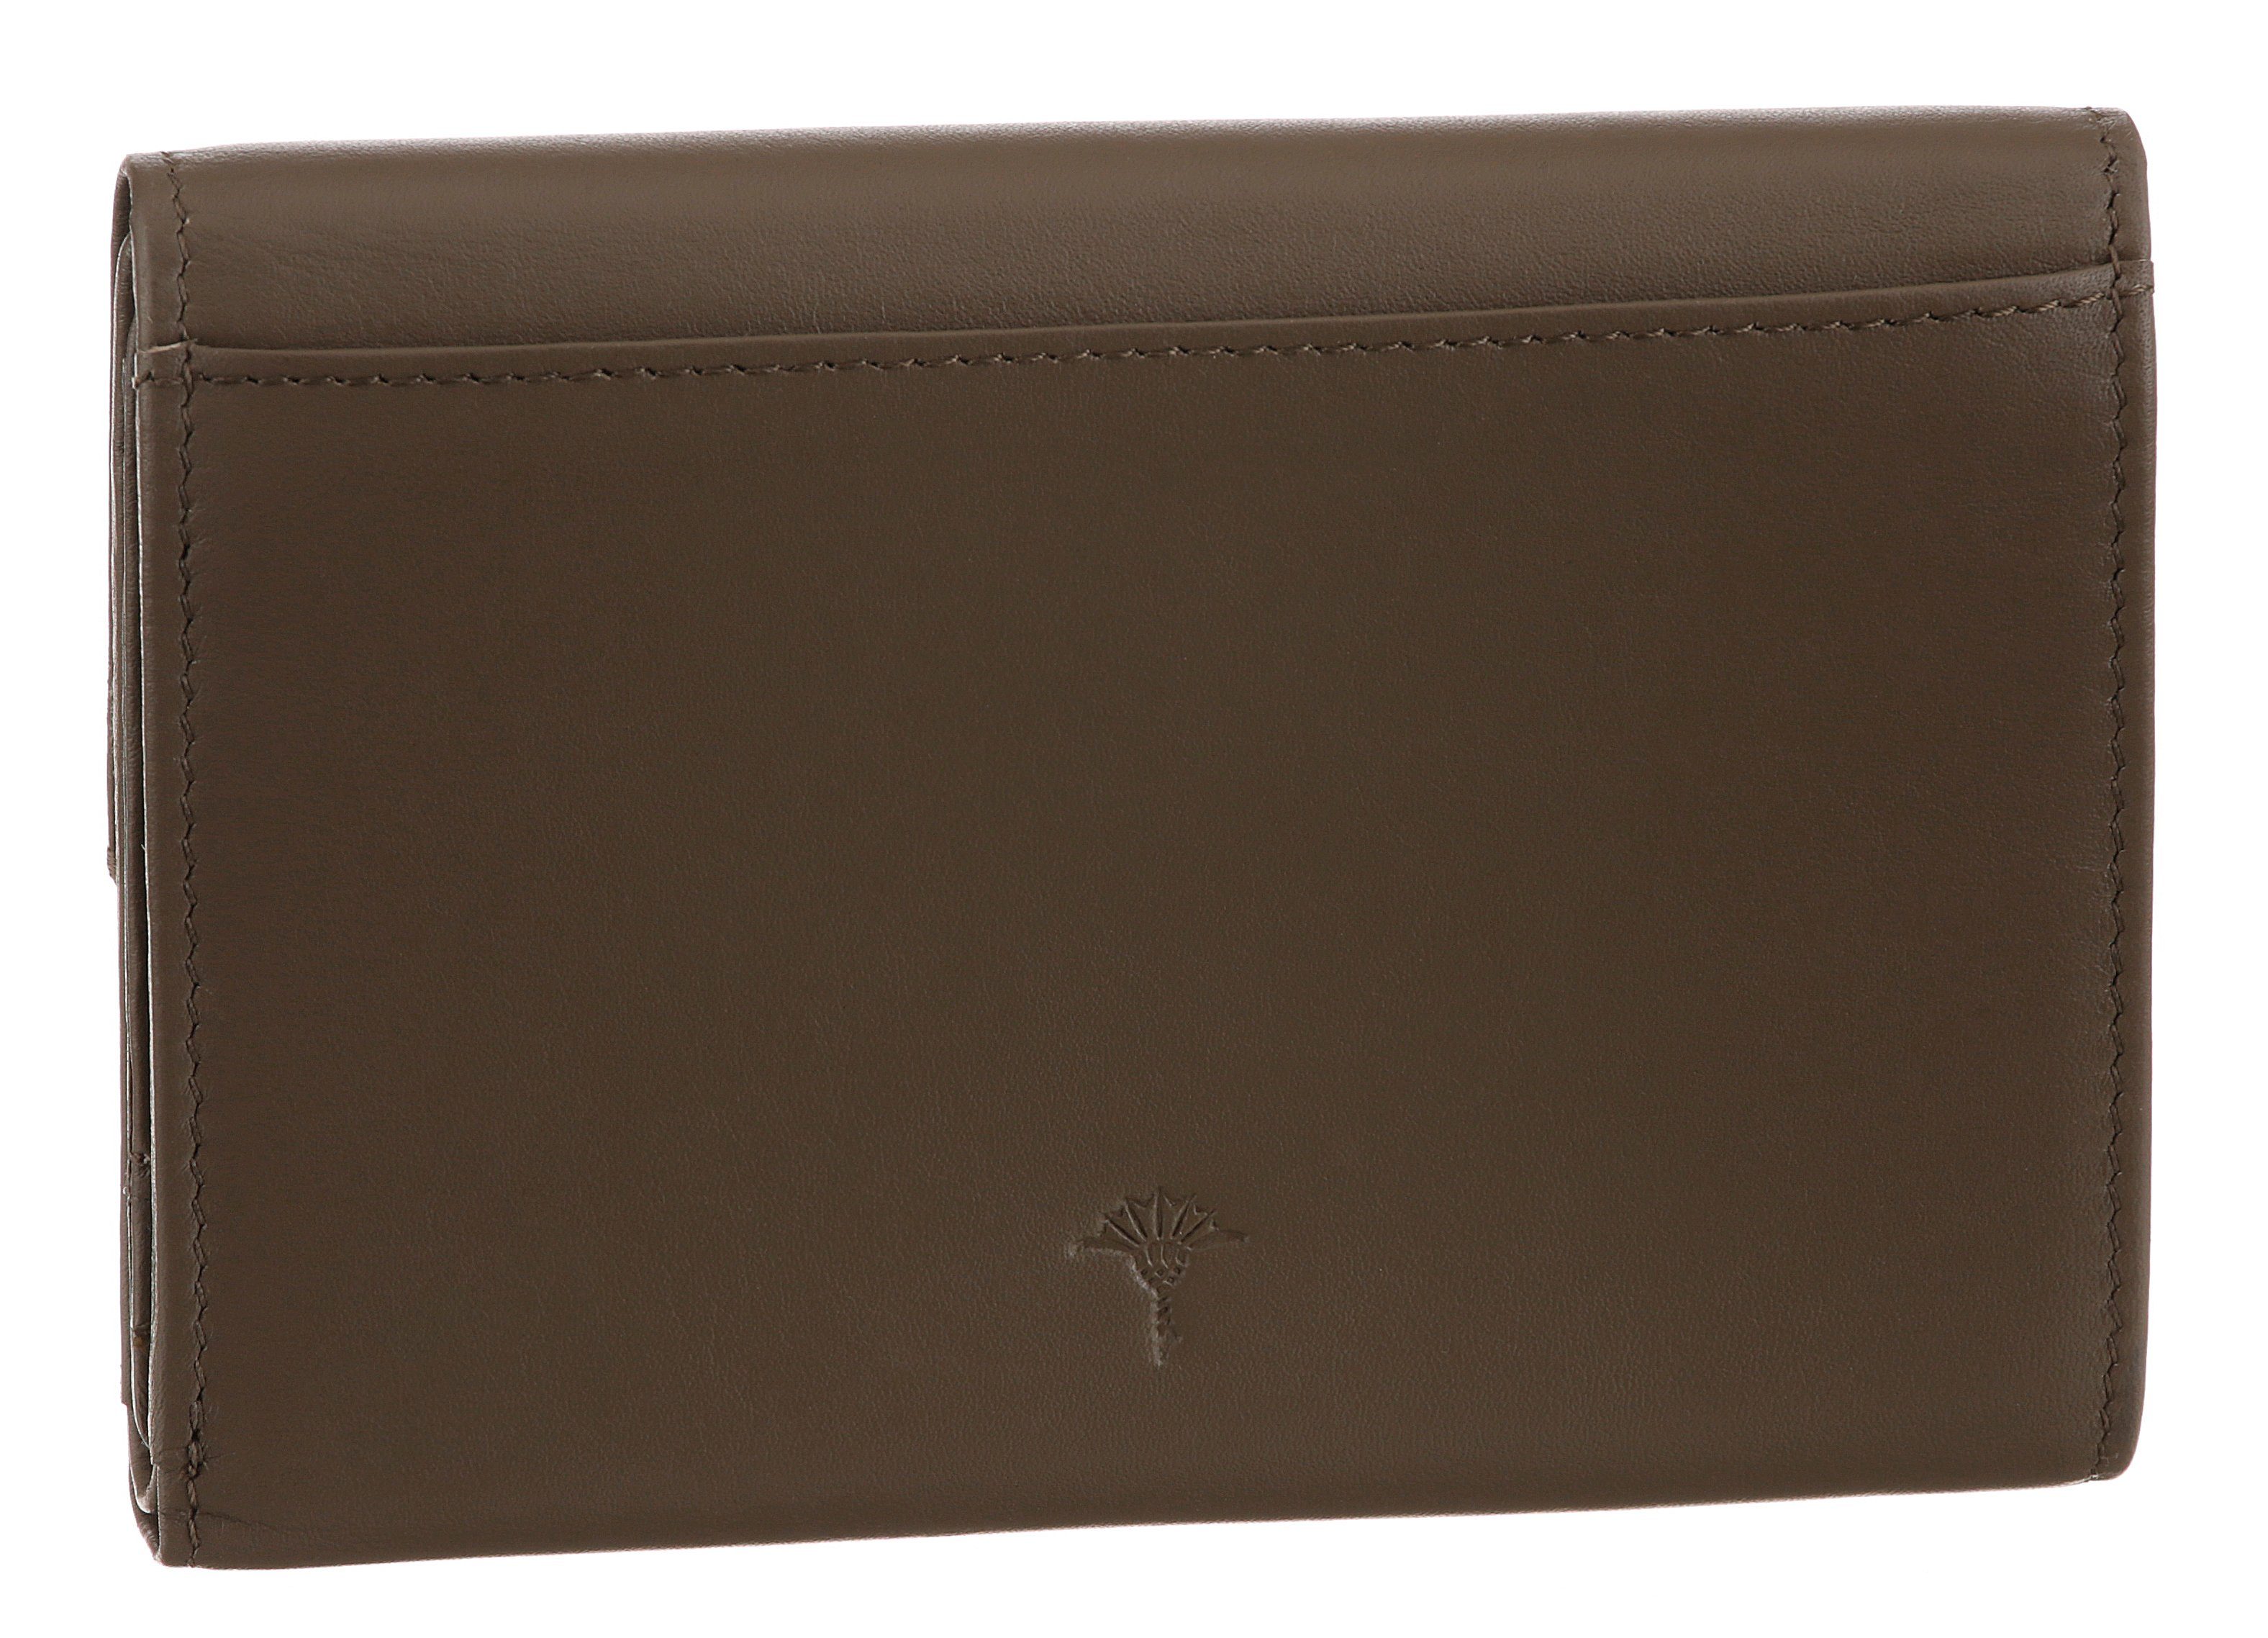 cosma 1.0 purse schlichtem Design in Joop! mh10f, dunkelbraun sofisticato Geldbörse